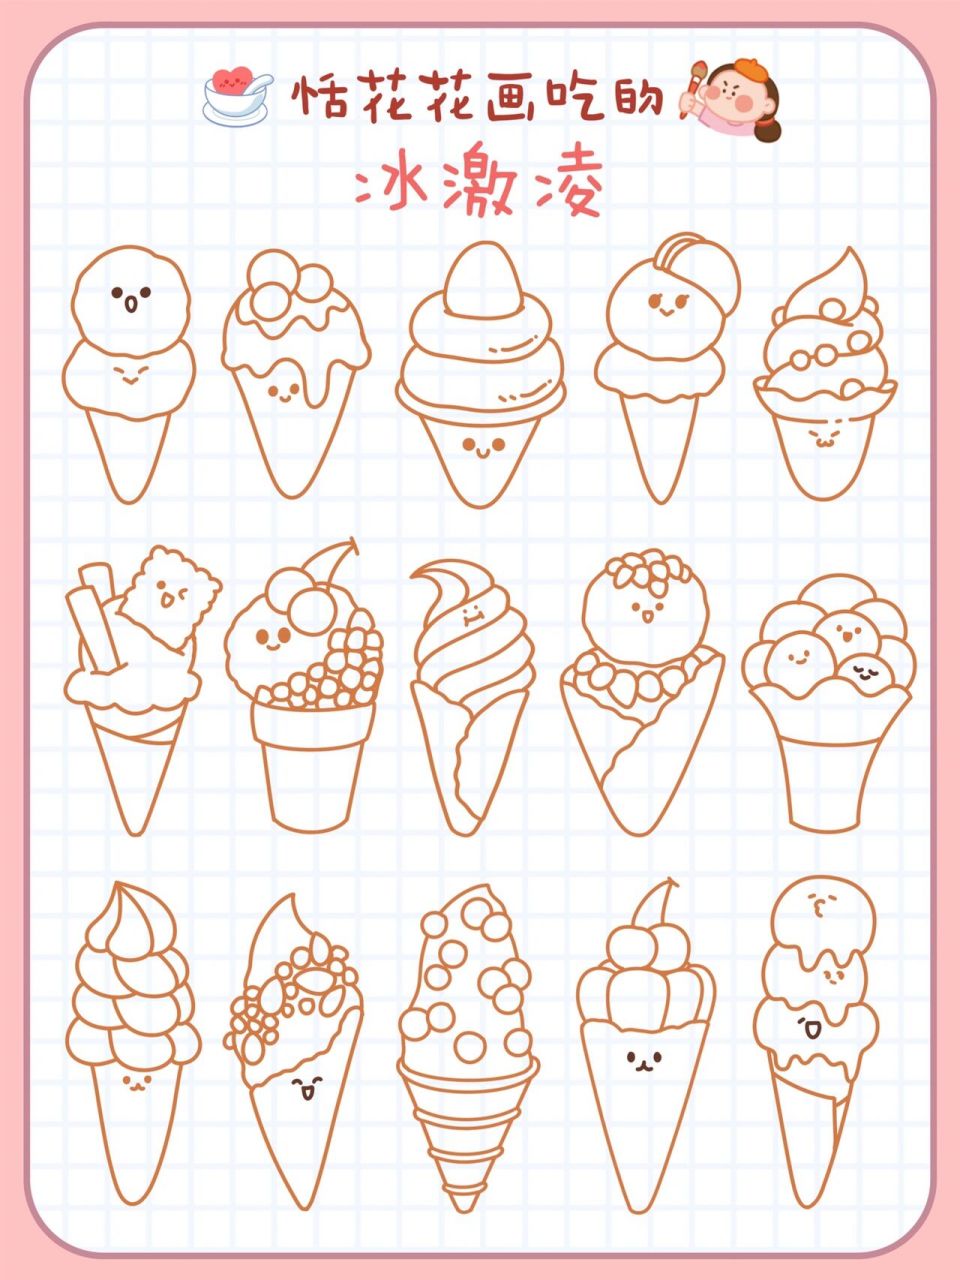 原创美食插画78甜品系92冰激凌简笔画90   今天吃什么?